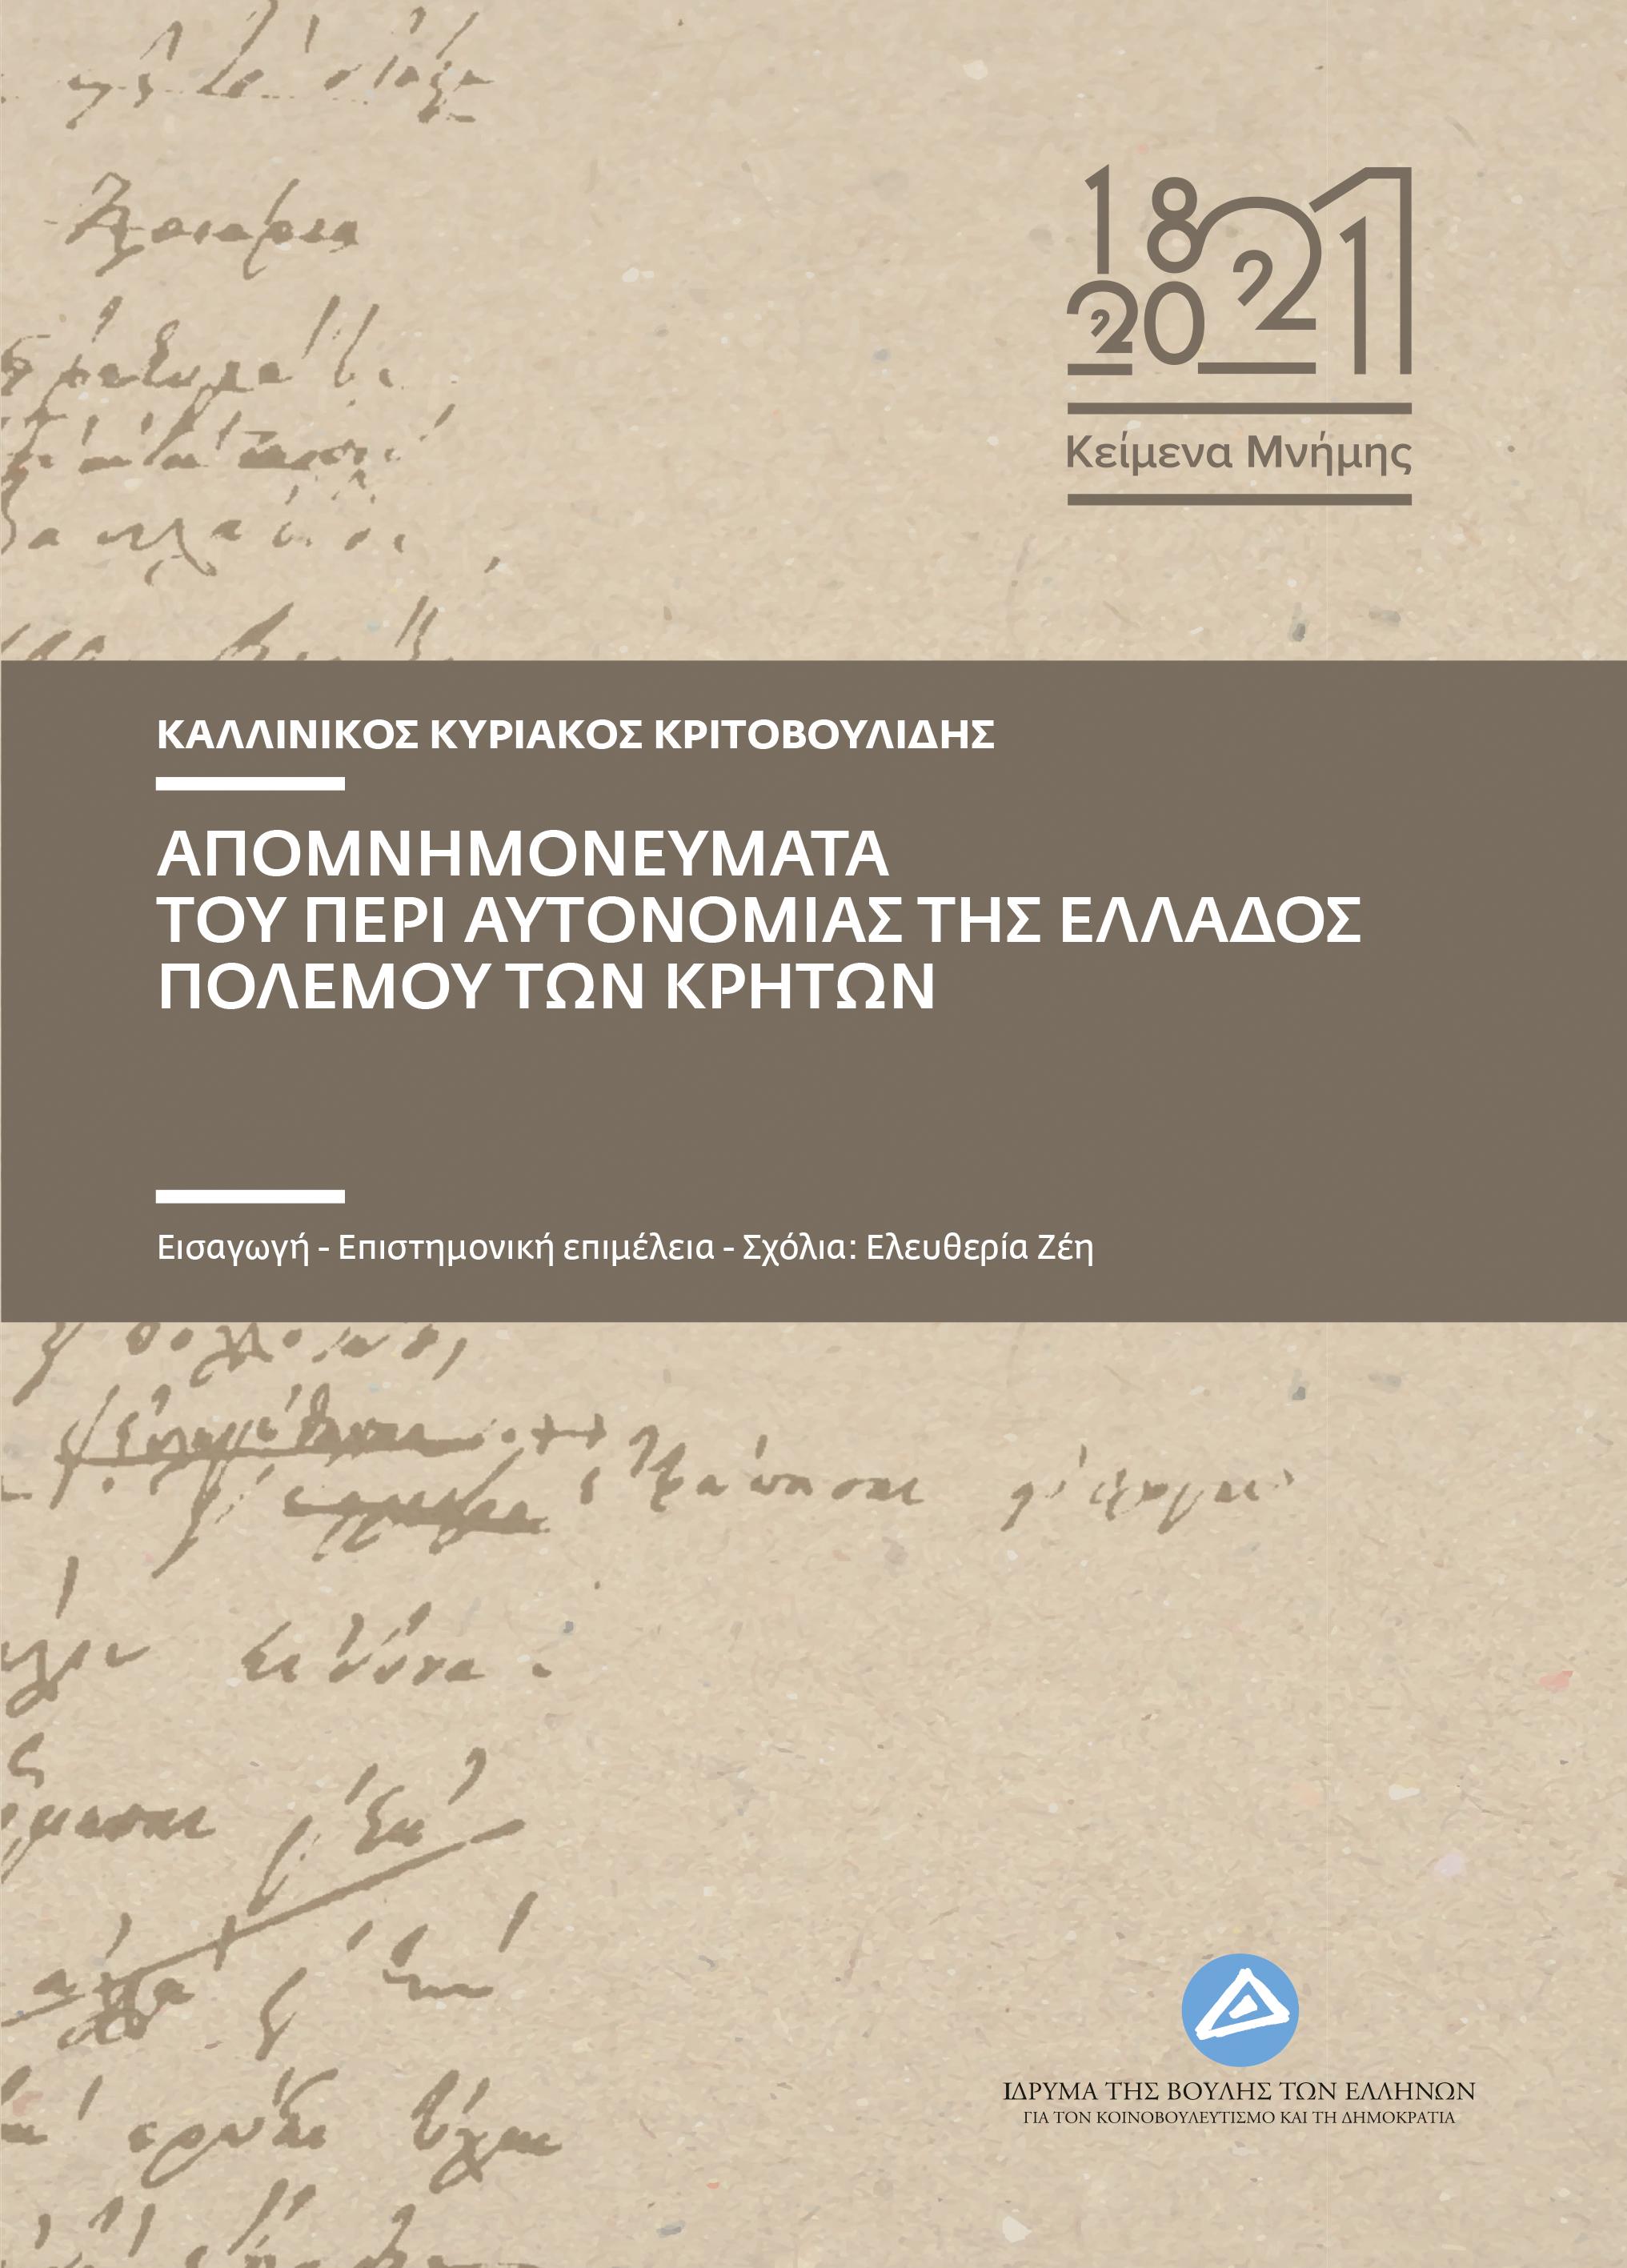 Απομνημονεύματα του περί αυτονομίας της Ελλάδος πολέμου των Κρητών, , Κριτοβουλίδης, Καλλίνικος, Ίδρυμα της Βουλής των Ελλήνων, 2021